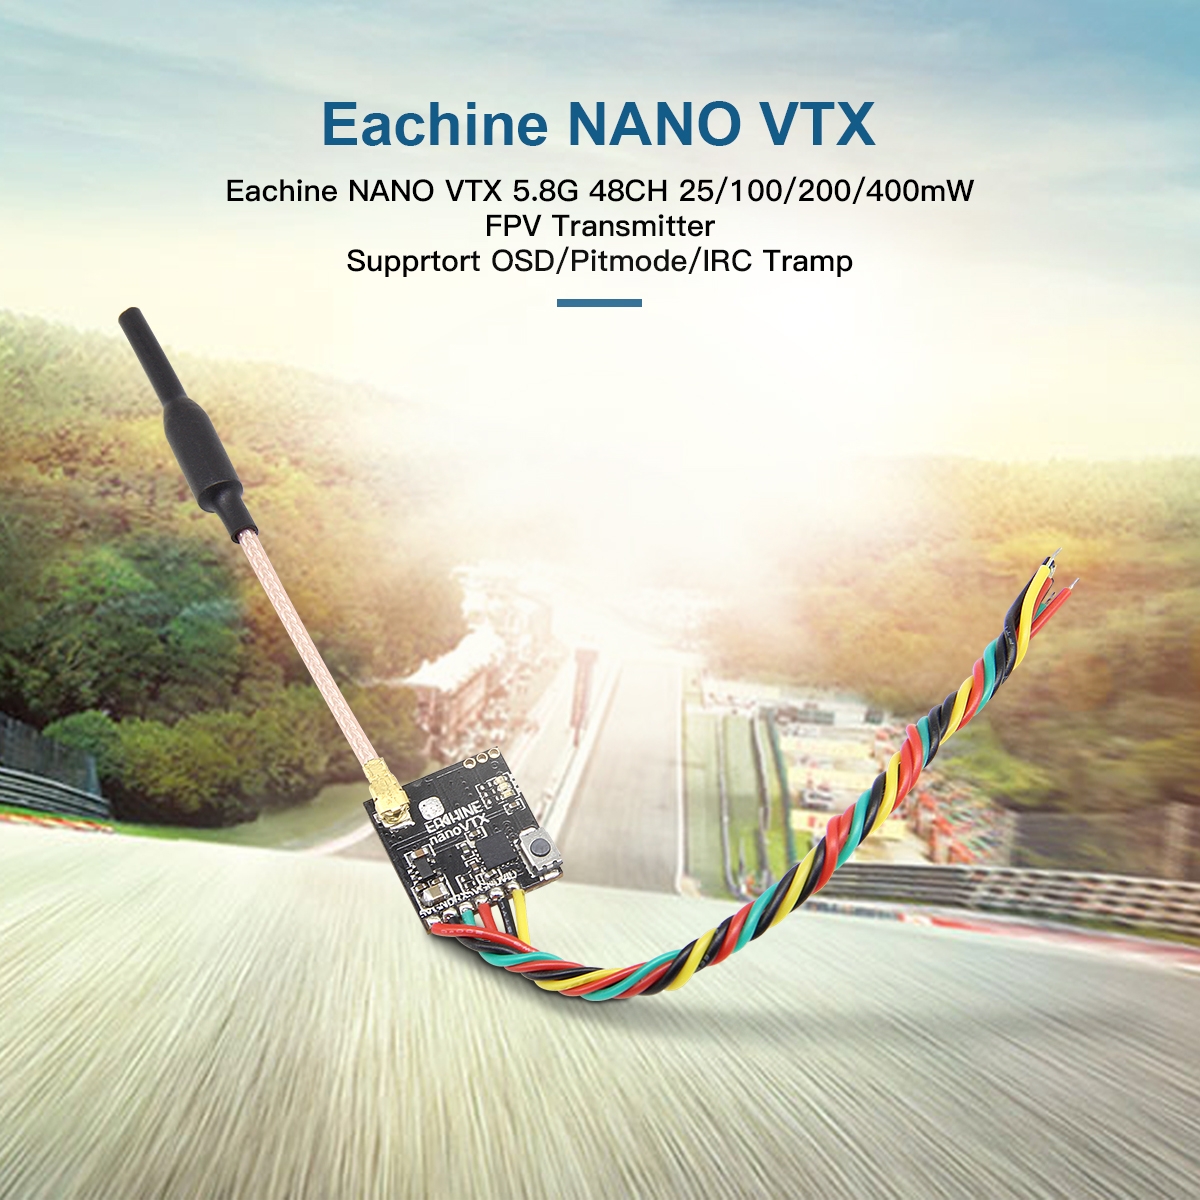 Eachine NANO VTX 5.8GHz 48CH FPV Transmitter With Runcam Racer Nano CMOS 700TVL 2.1mm FPV Camera Combo for FPV Racer Drone